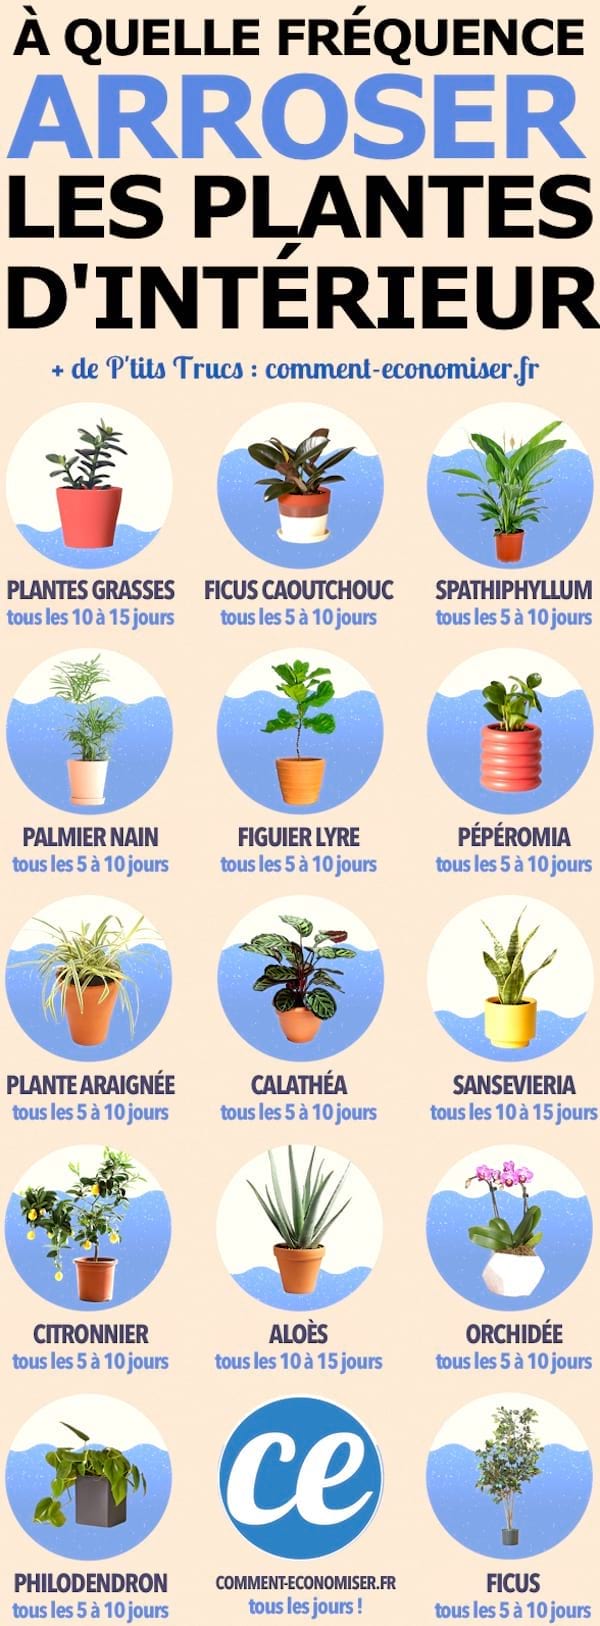 Guide pour savoir à quelle fréquence il faut arroser ses plantes